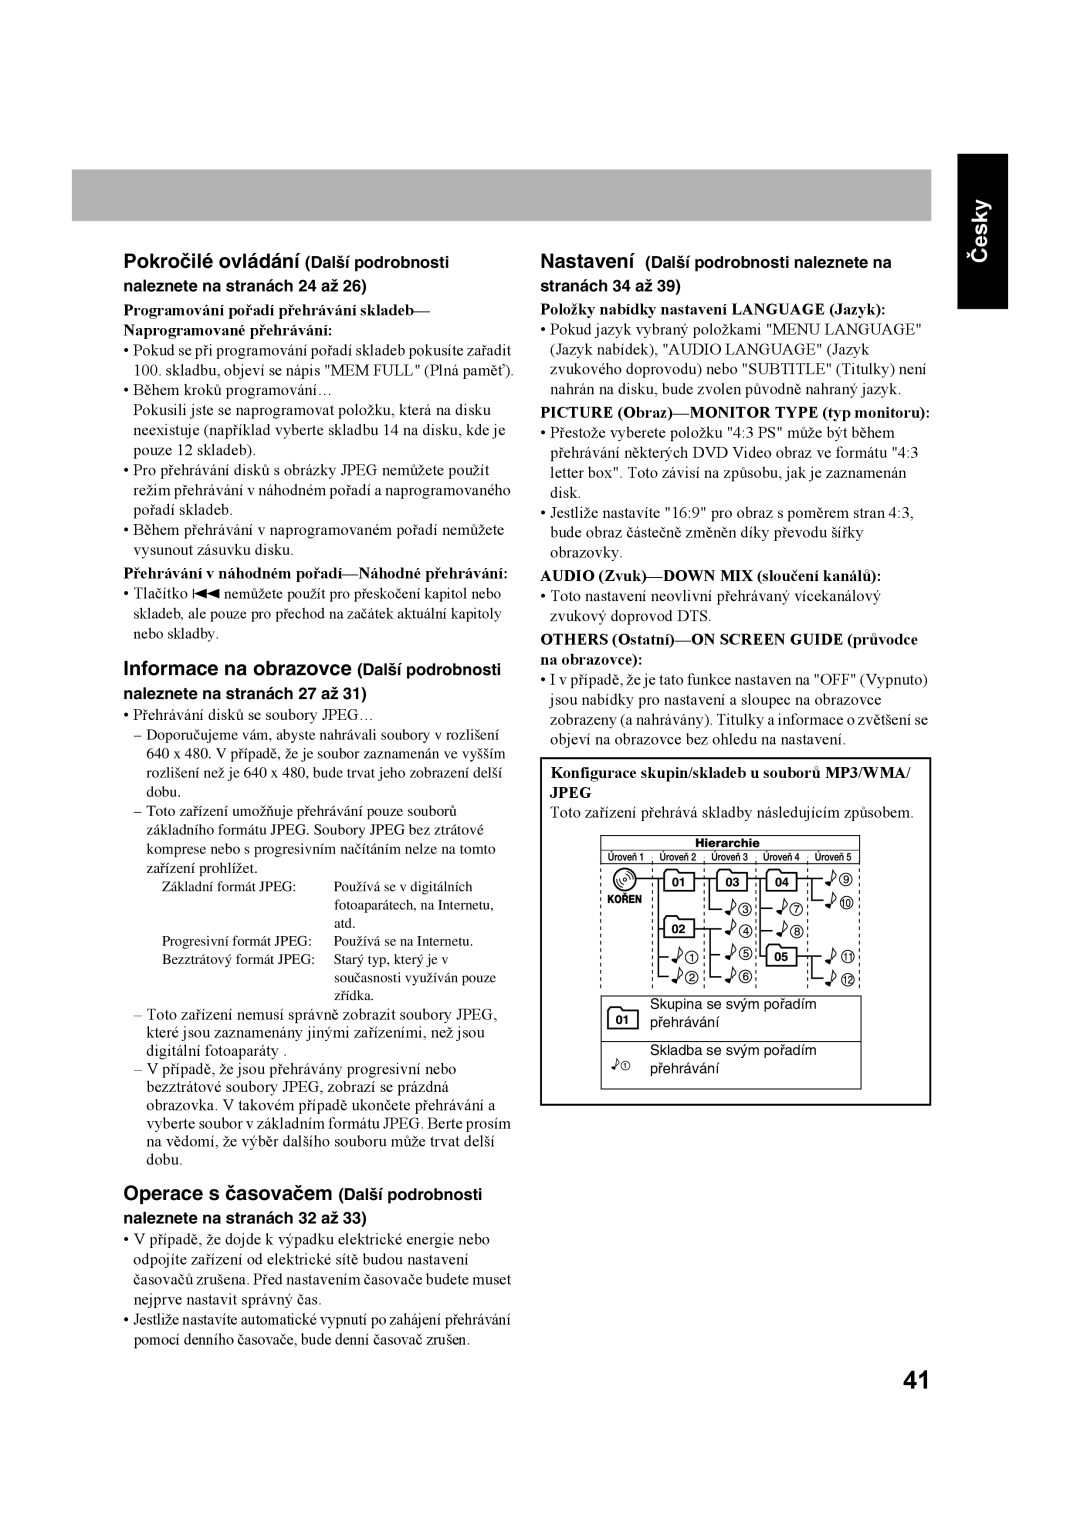 JVC CA-UXS77 manual Pokročilé ovládání Další podrobnosti, Informace na obrazovce Další podrobnosti, Česky, stranách 34 až 